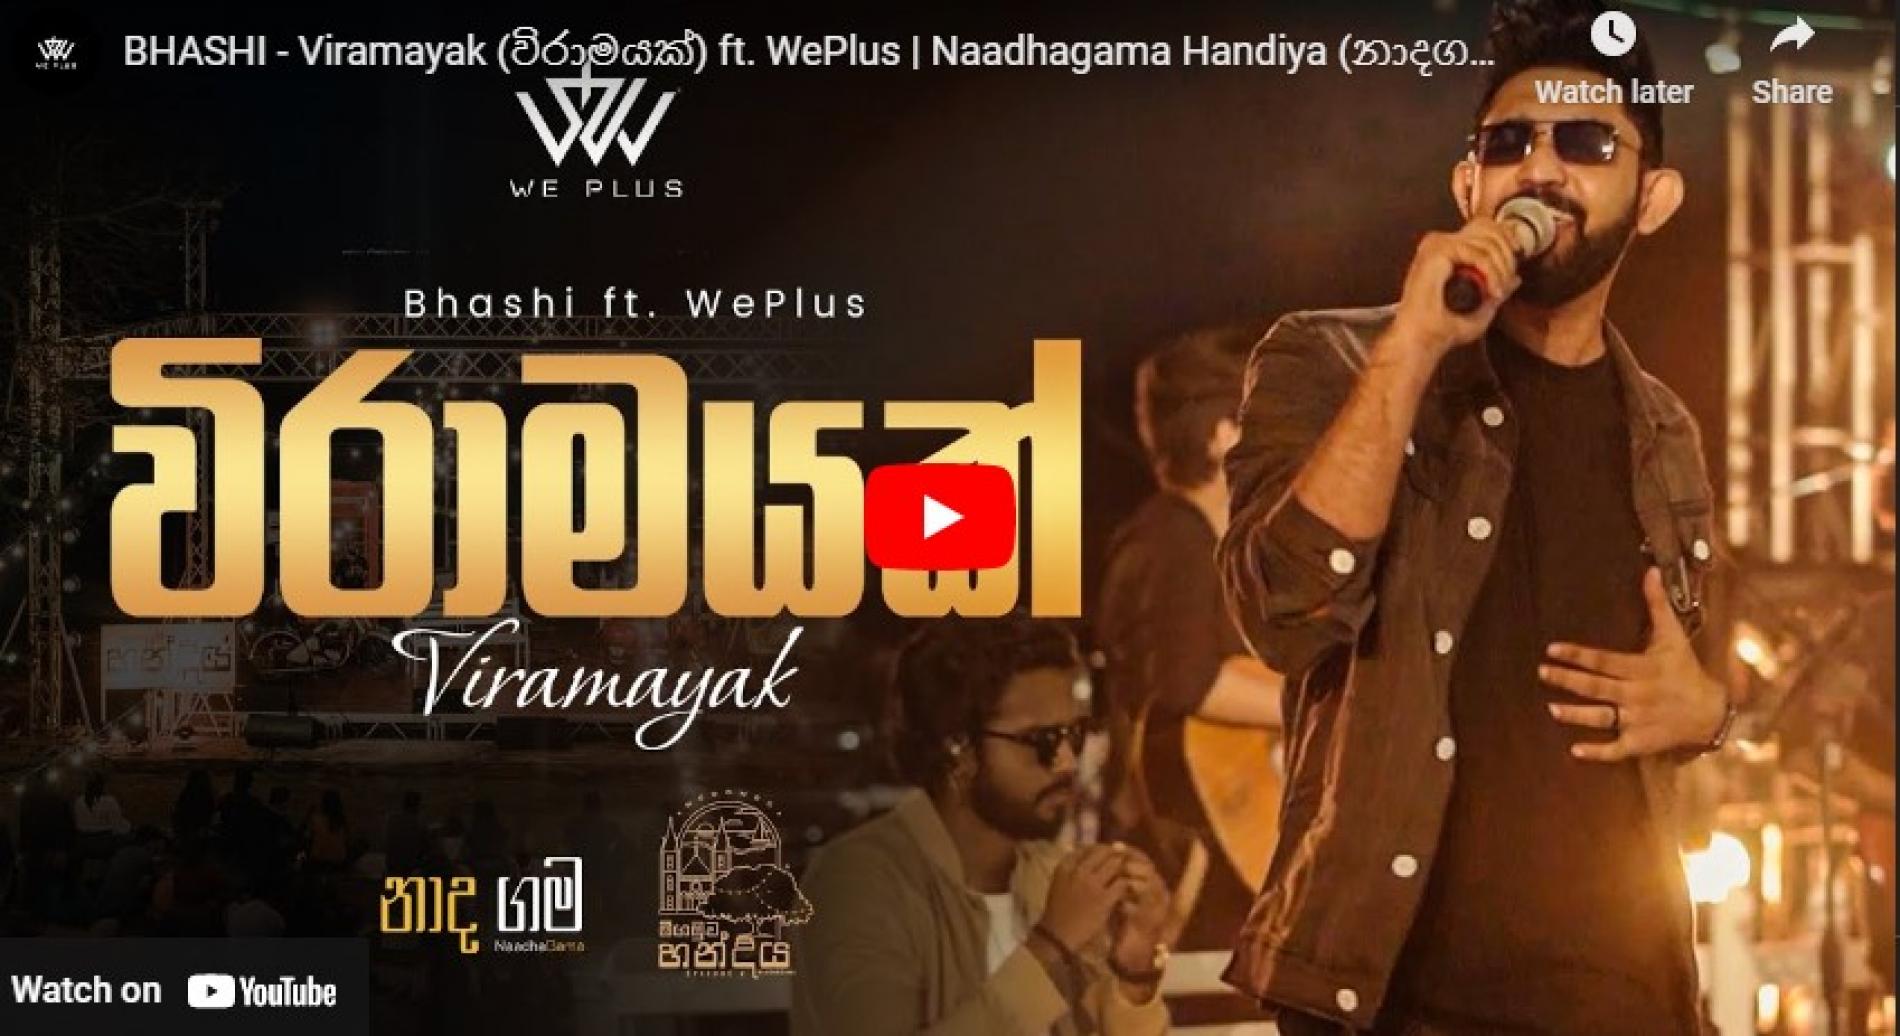 New Music : BHASHI – Viramayak (විරාමයක්) ft. WePlus | Naadhagama Handiya (නාදගම හන්දිය)